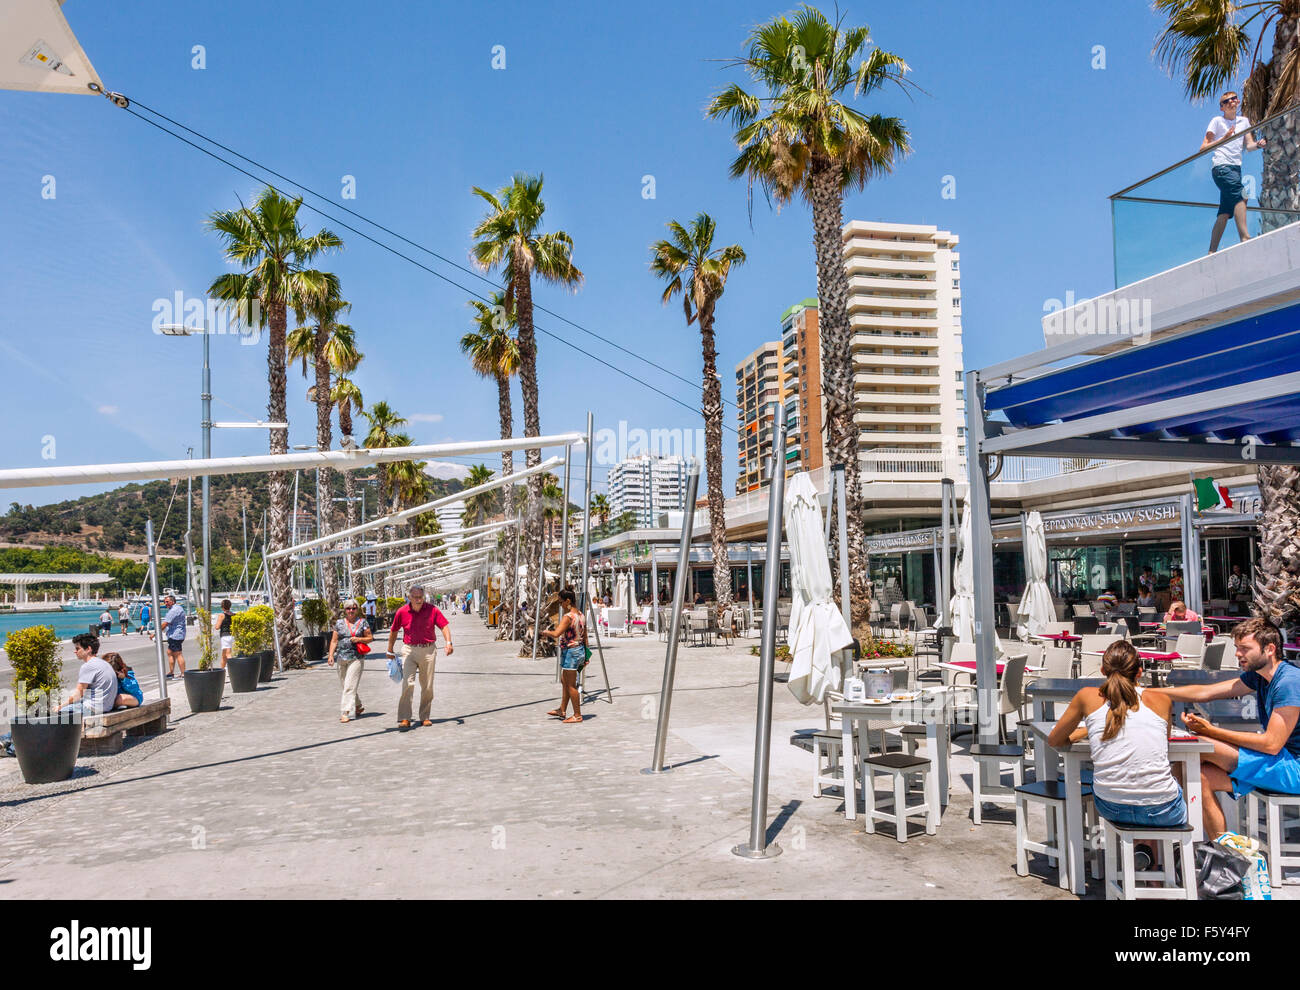 Muelle Uno, Hafen von Malaga, Malaga, Andalusien, Spanien. Stockfoto